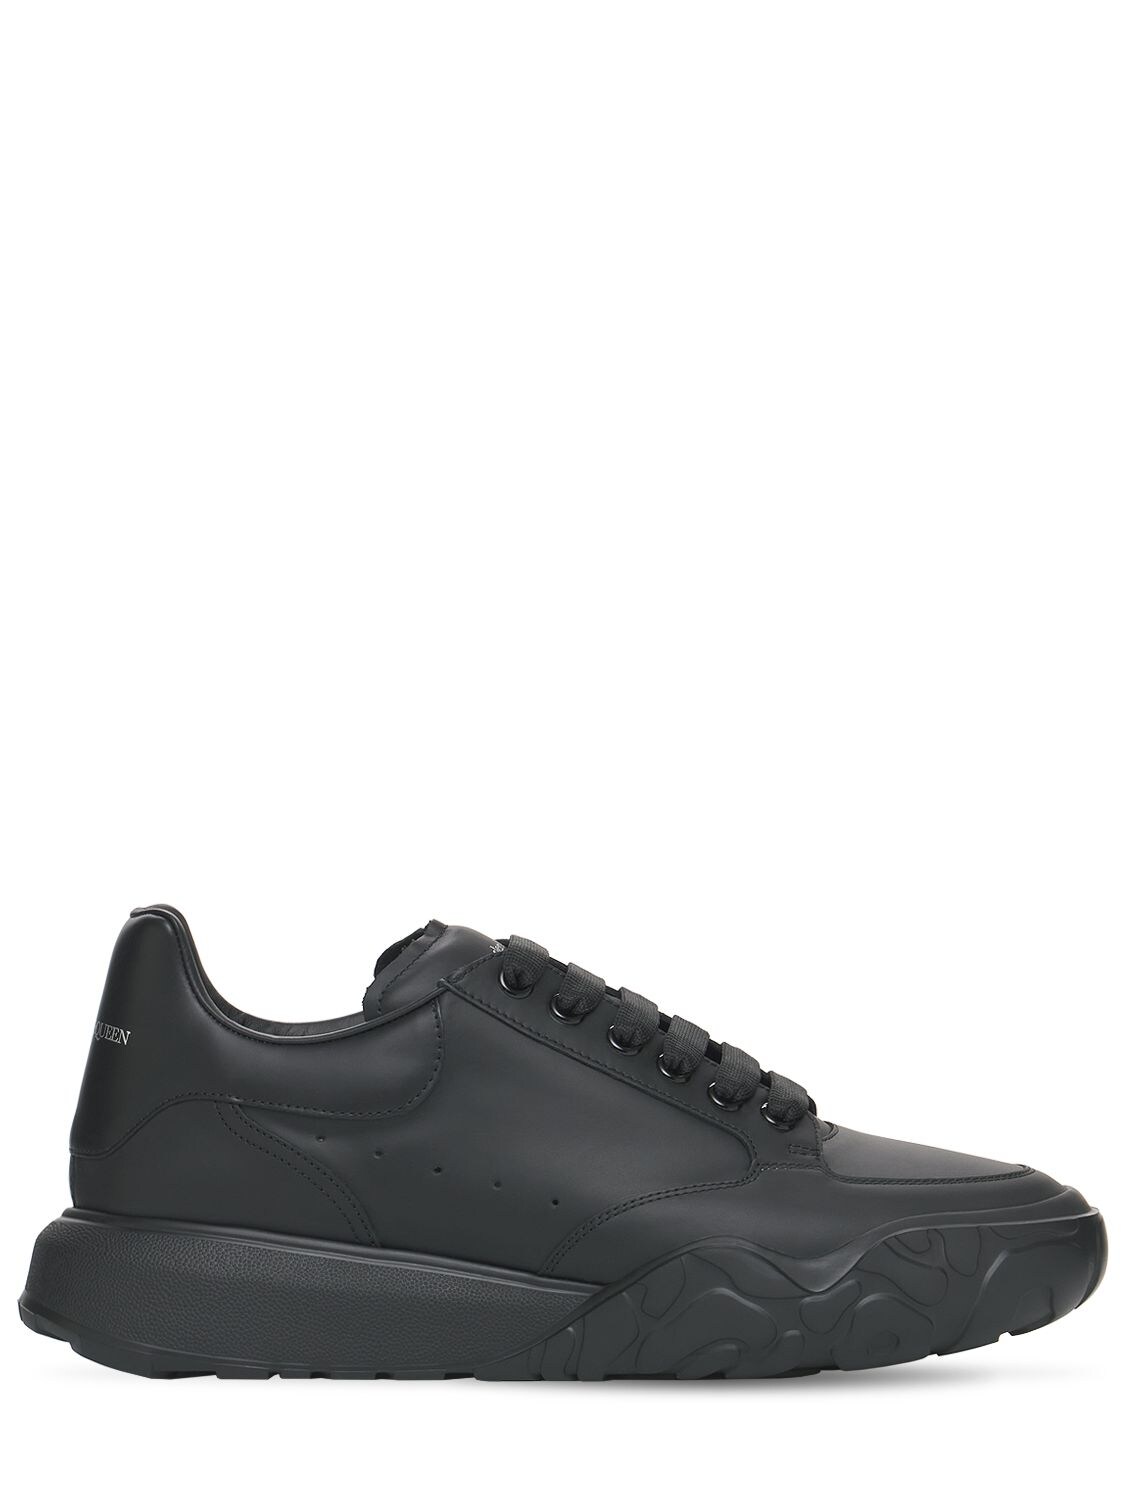 Alexander Mcqueen Leather Sneakers In Black | ModeSens